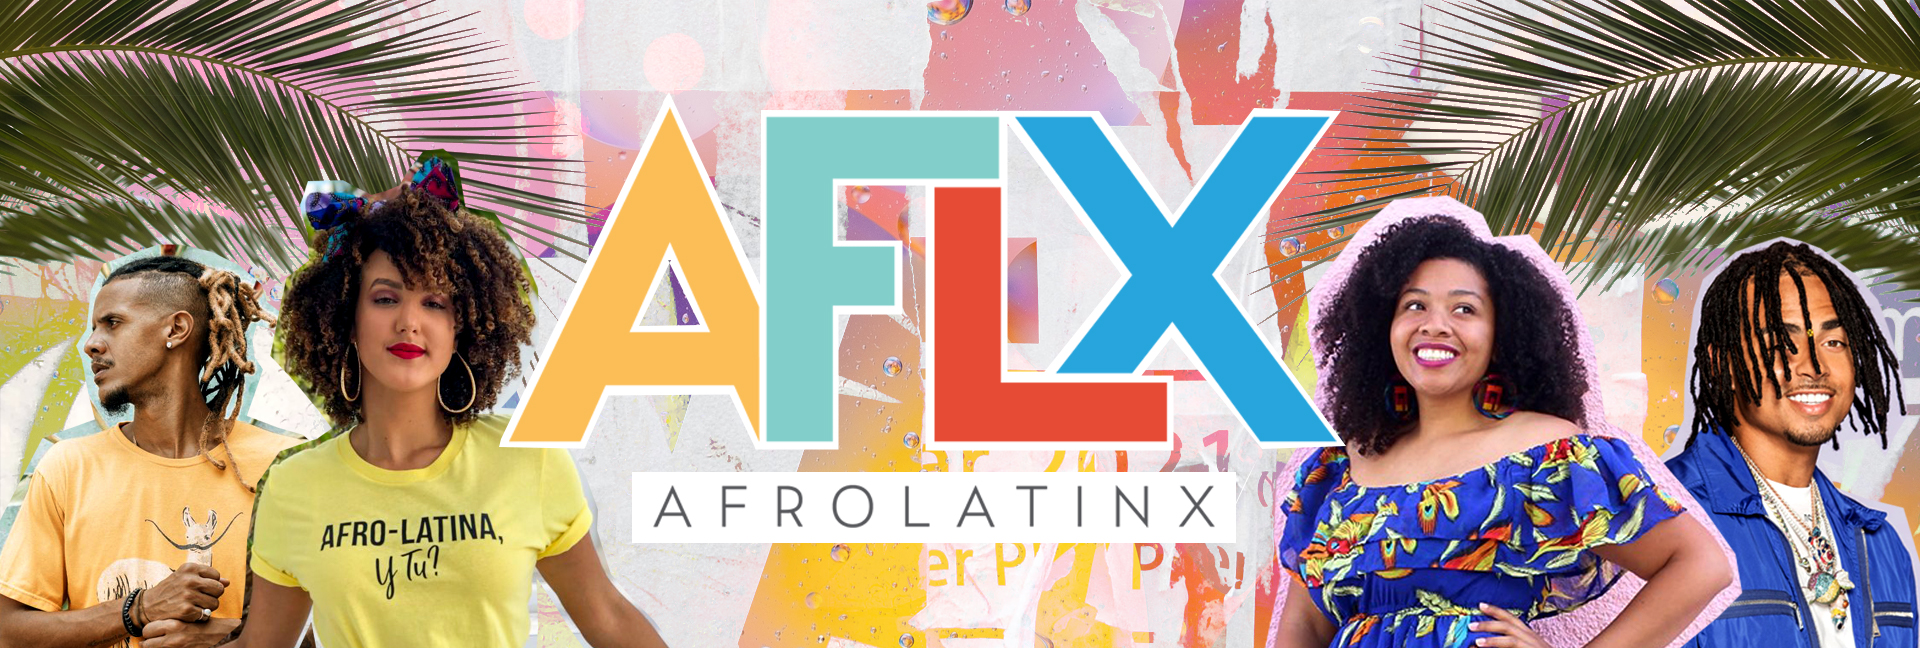 AFLX Banner